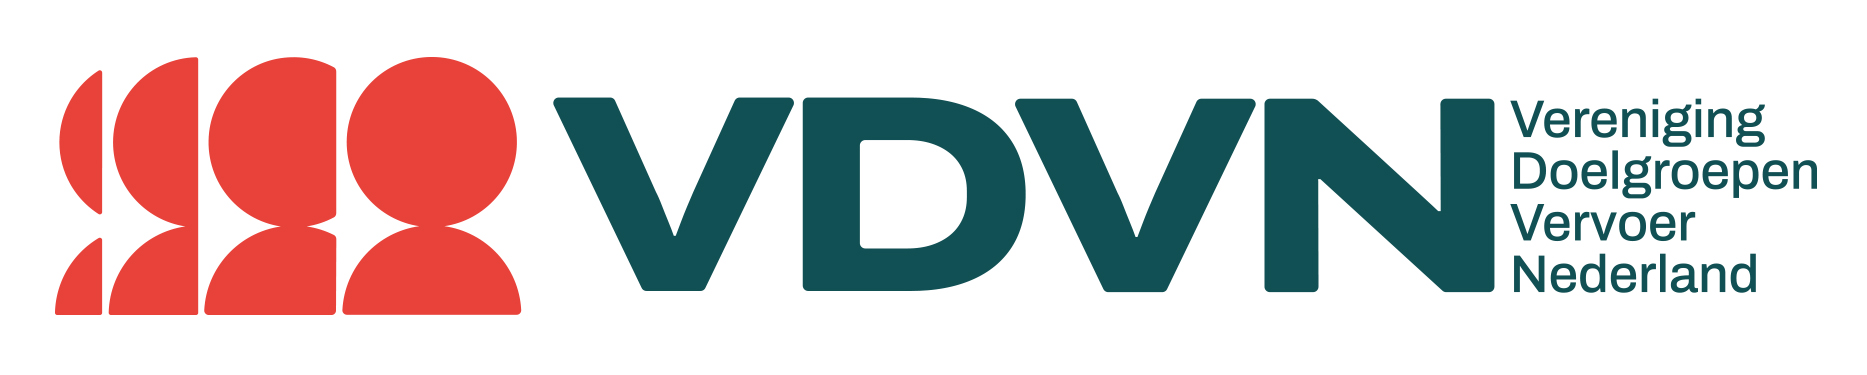 Omschrijving VDVN-logo (van links naar rechts): Het logo bestaat uit een rood poppetje dat van 1/4 uitsnede uitgroeit tot 1 volledig poppetje. Daarna volgen de letters VDVN en achter de letters staat de tekst`: Vereniging Doelgroepenvervoer Nederland.